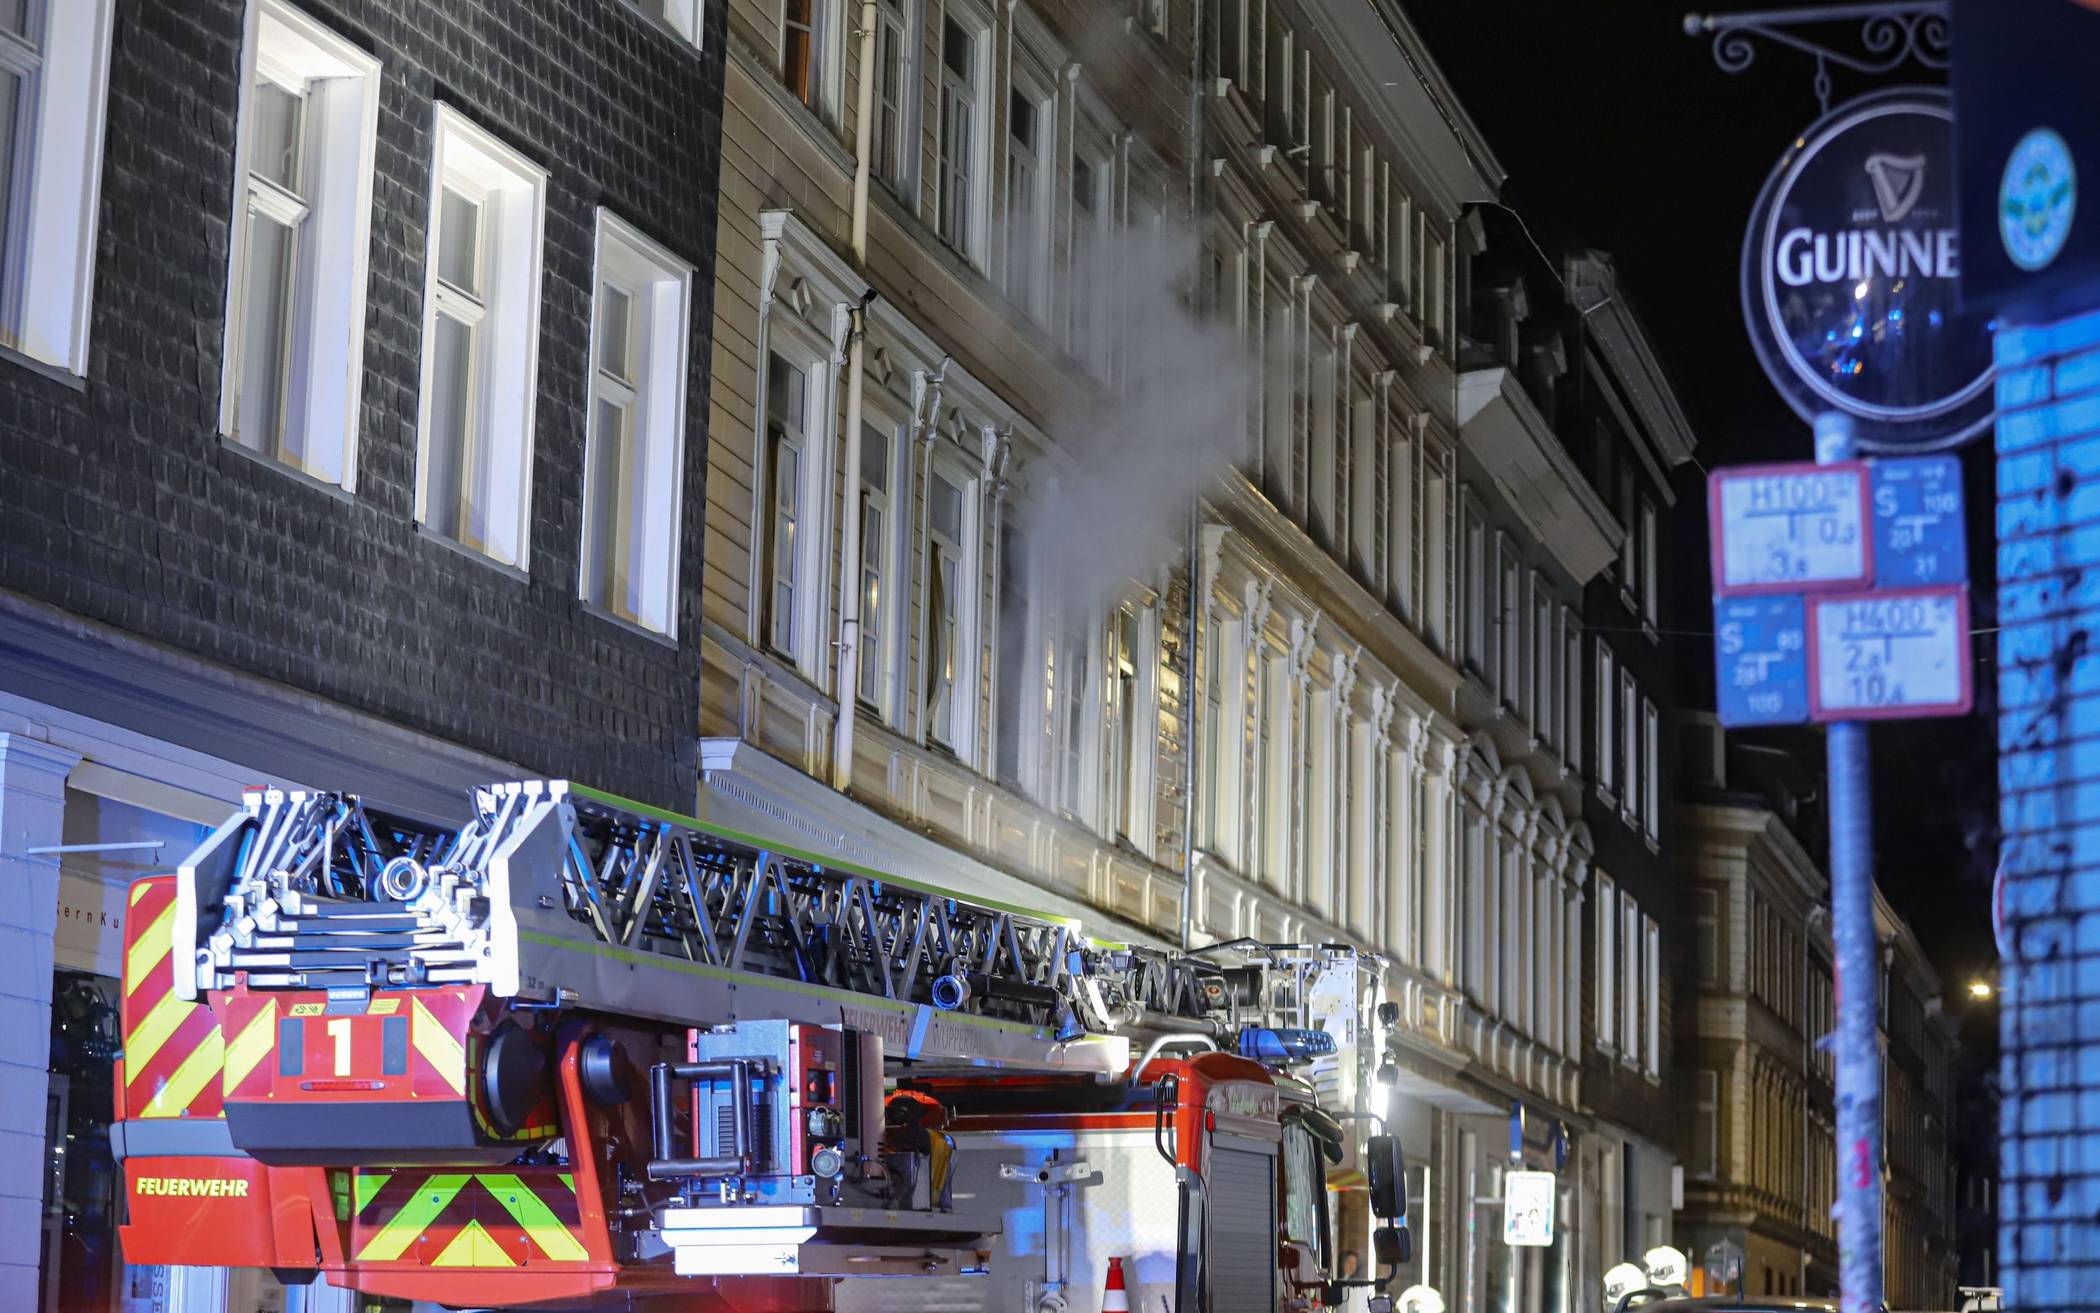 Bilder: Wuppertaler Feuerwehr rettet Person bei Hausbrand​